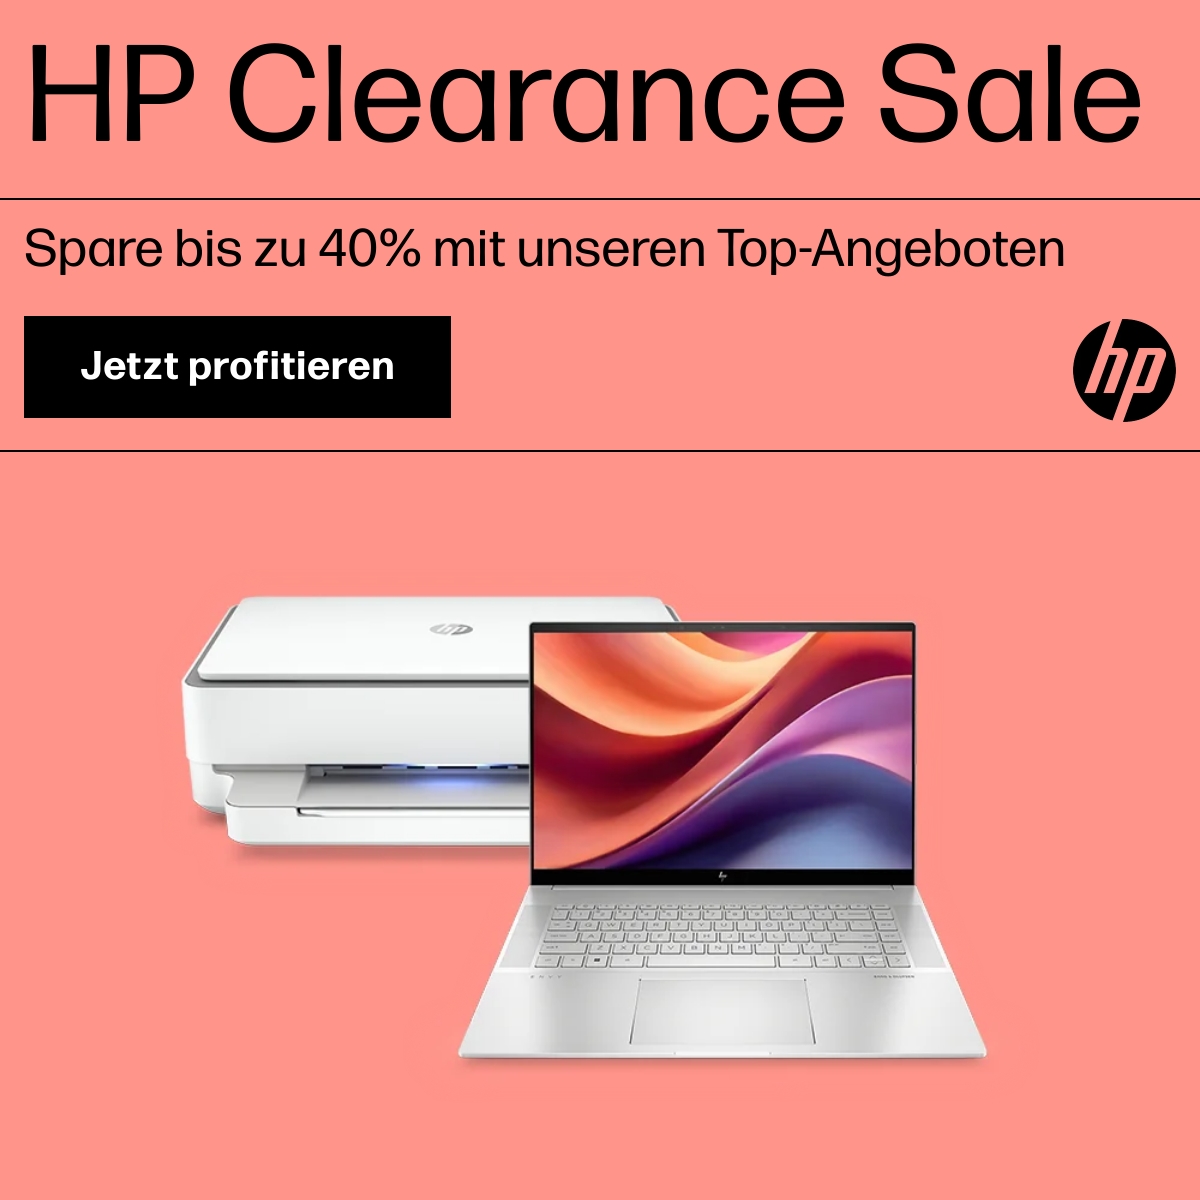 Clearance Sale im HP Store mit bis zu 40% Rabatt